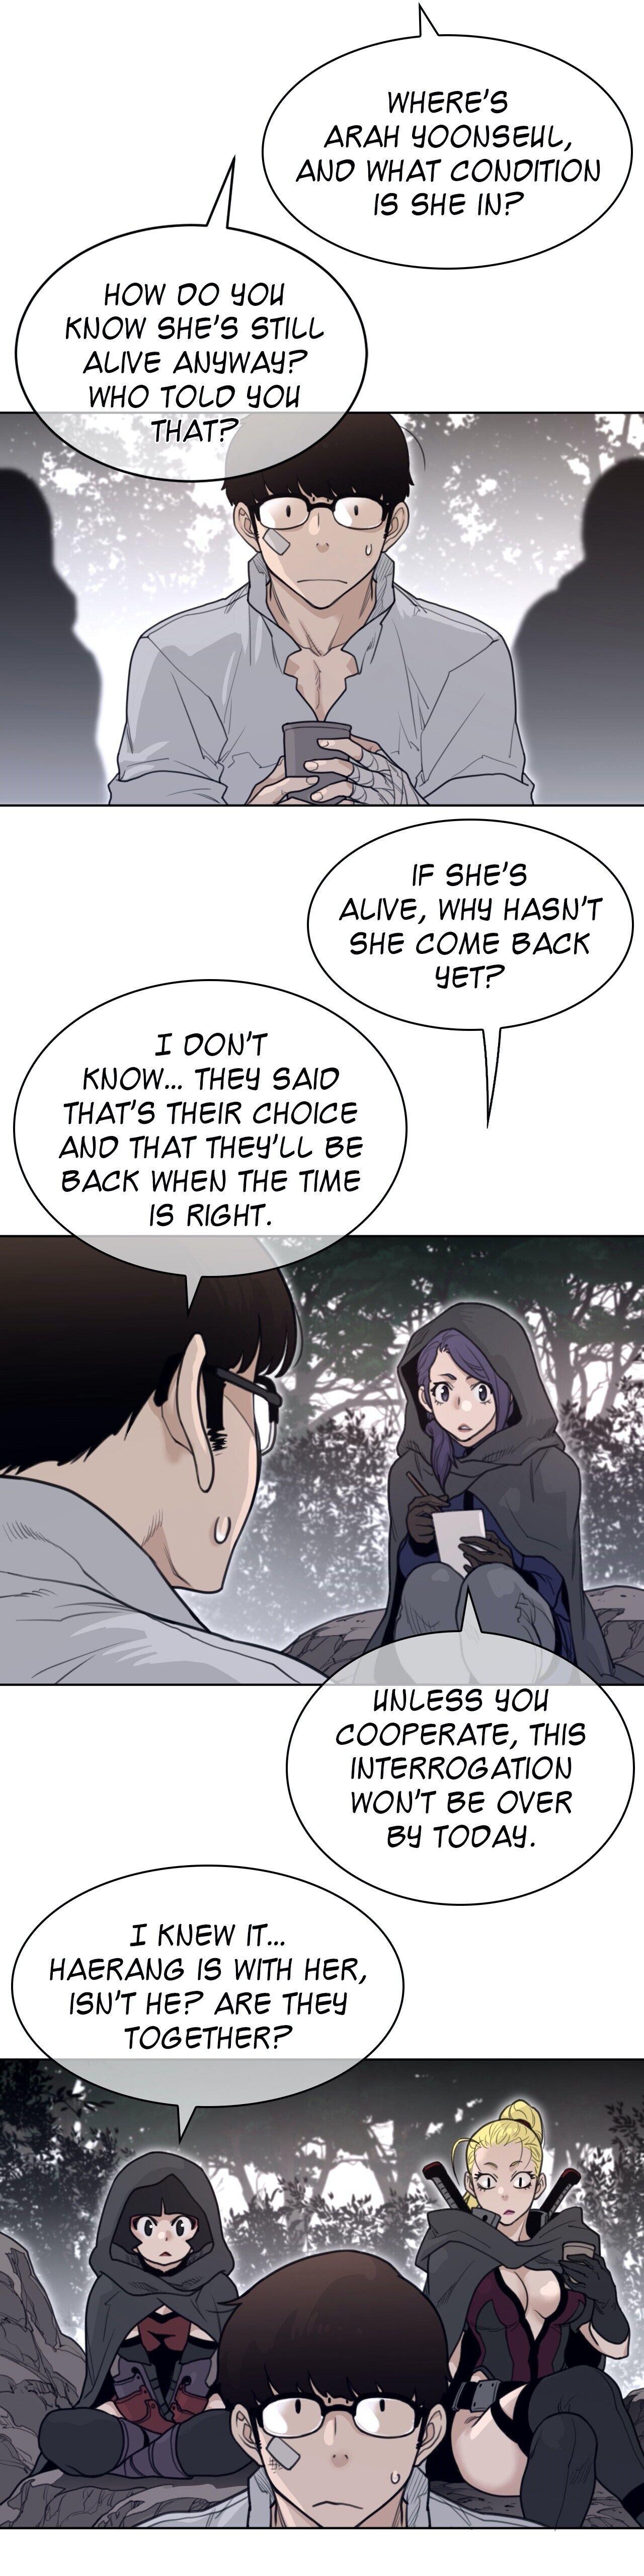 Perfect Half Chapter 135 : Another Reunion (Season 2 Finale) page 5 - Mangakakalot